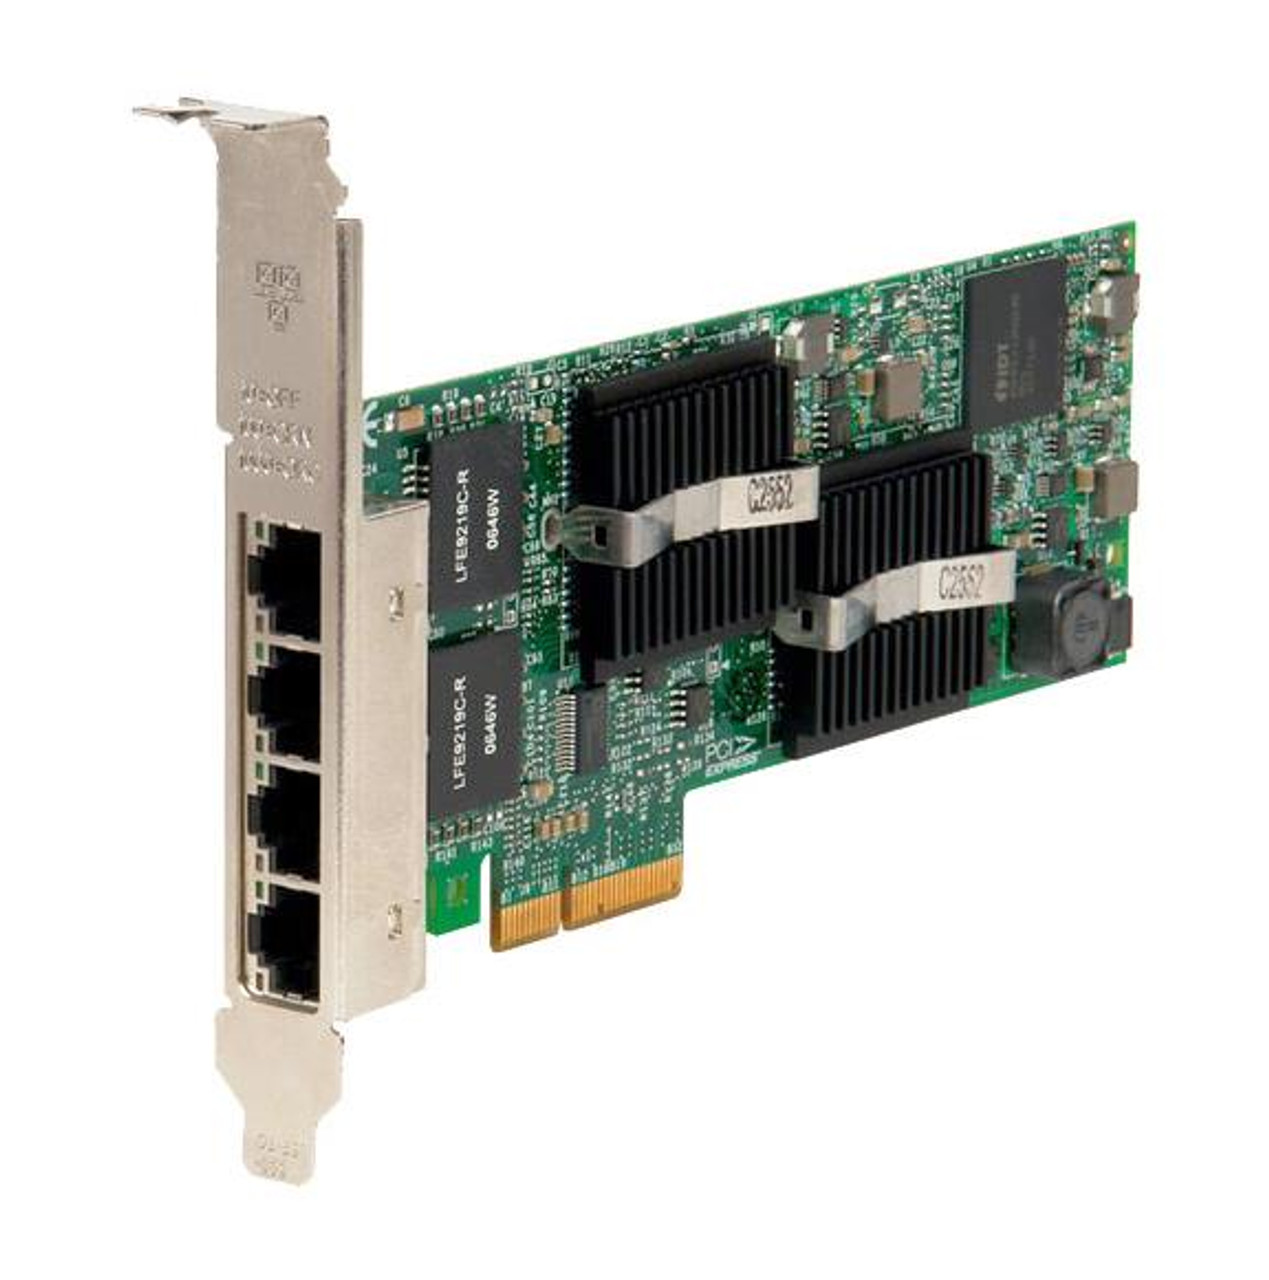 EXPI9404VTG1P20PAK Intel Gigabit VT Quad-Ports RJ-45 1Gbps 10Base-T/100Base-TX/1000Base-T Gigabit Ethernet PCI Express 1.1 x4 Server Network Adapter